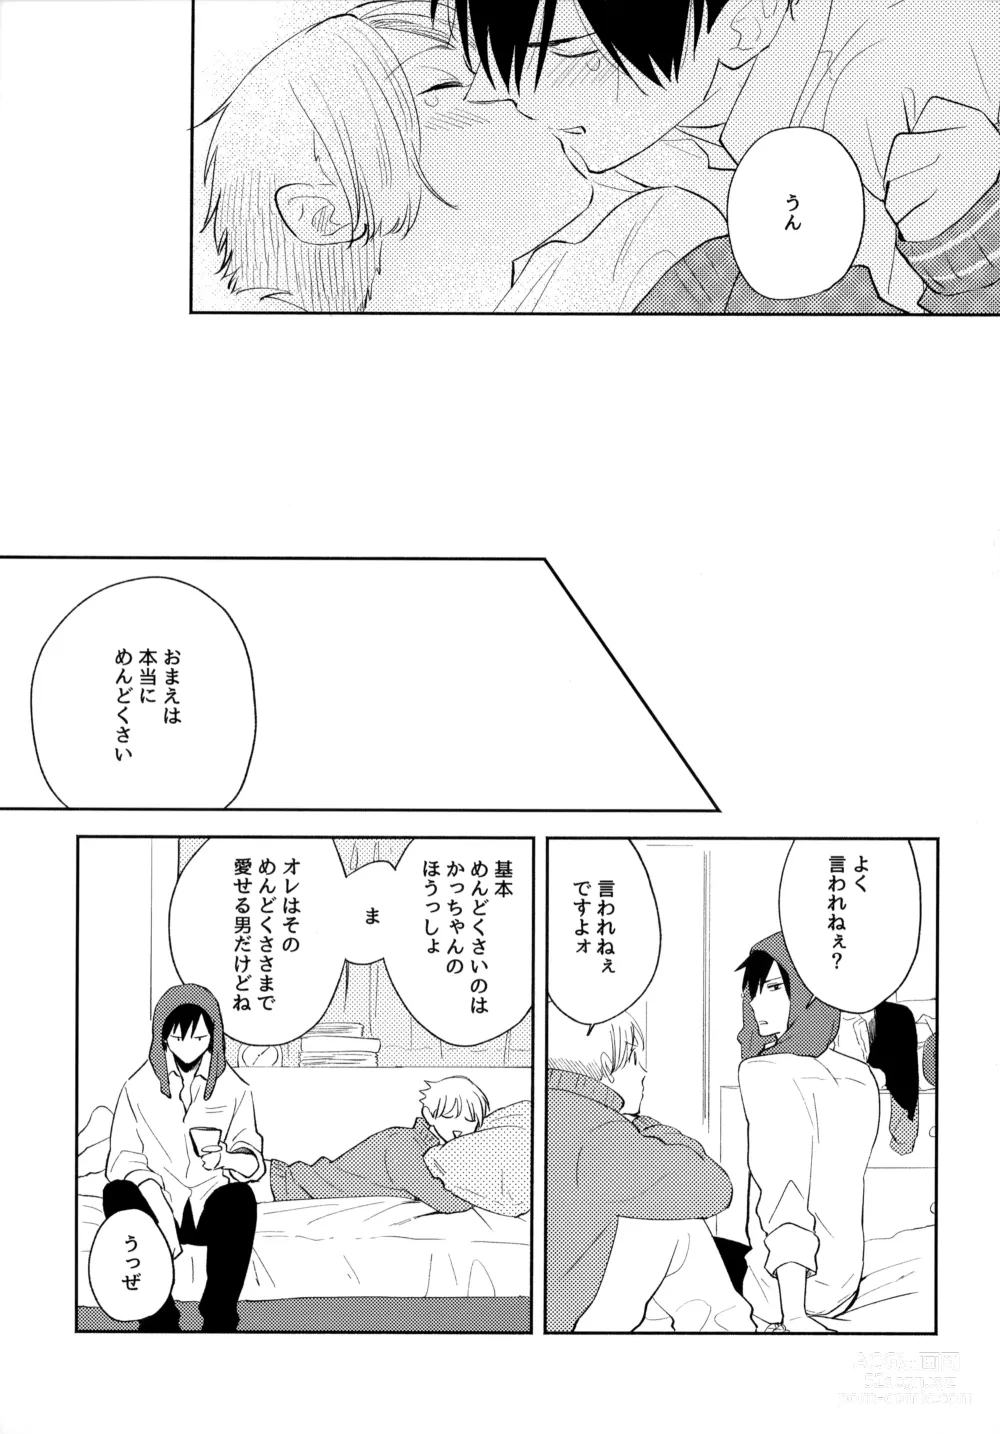 Page 96 of doujinshi Ore no Suki Kimi no Suki Kimi ga Suki